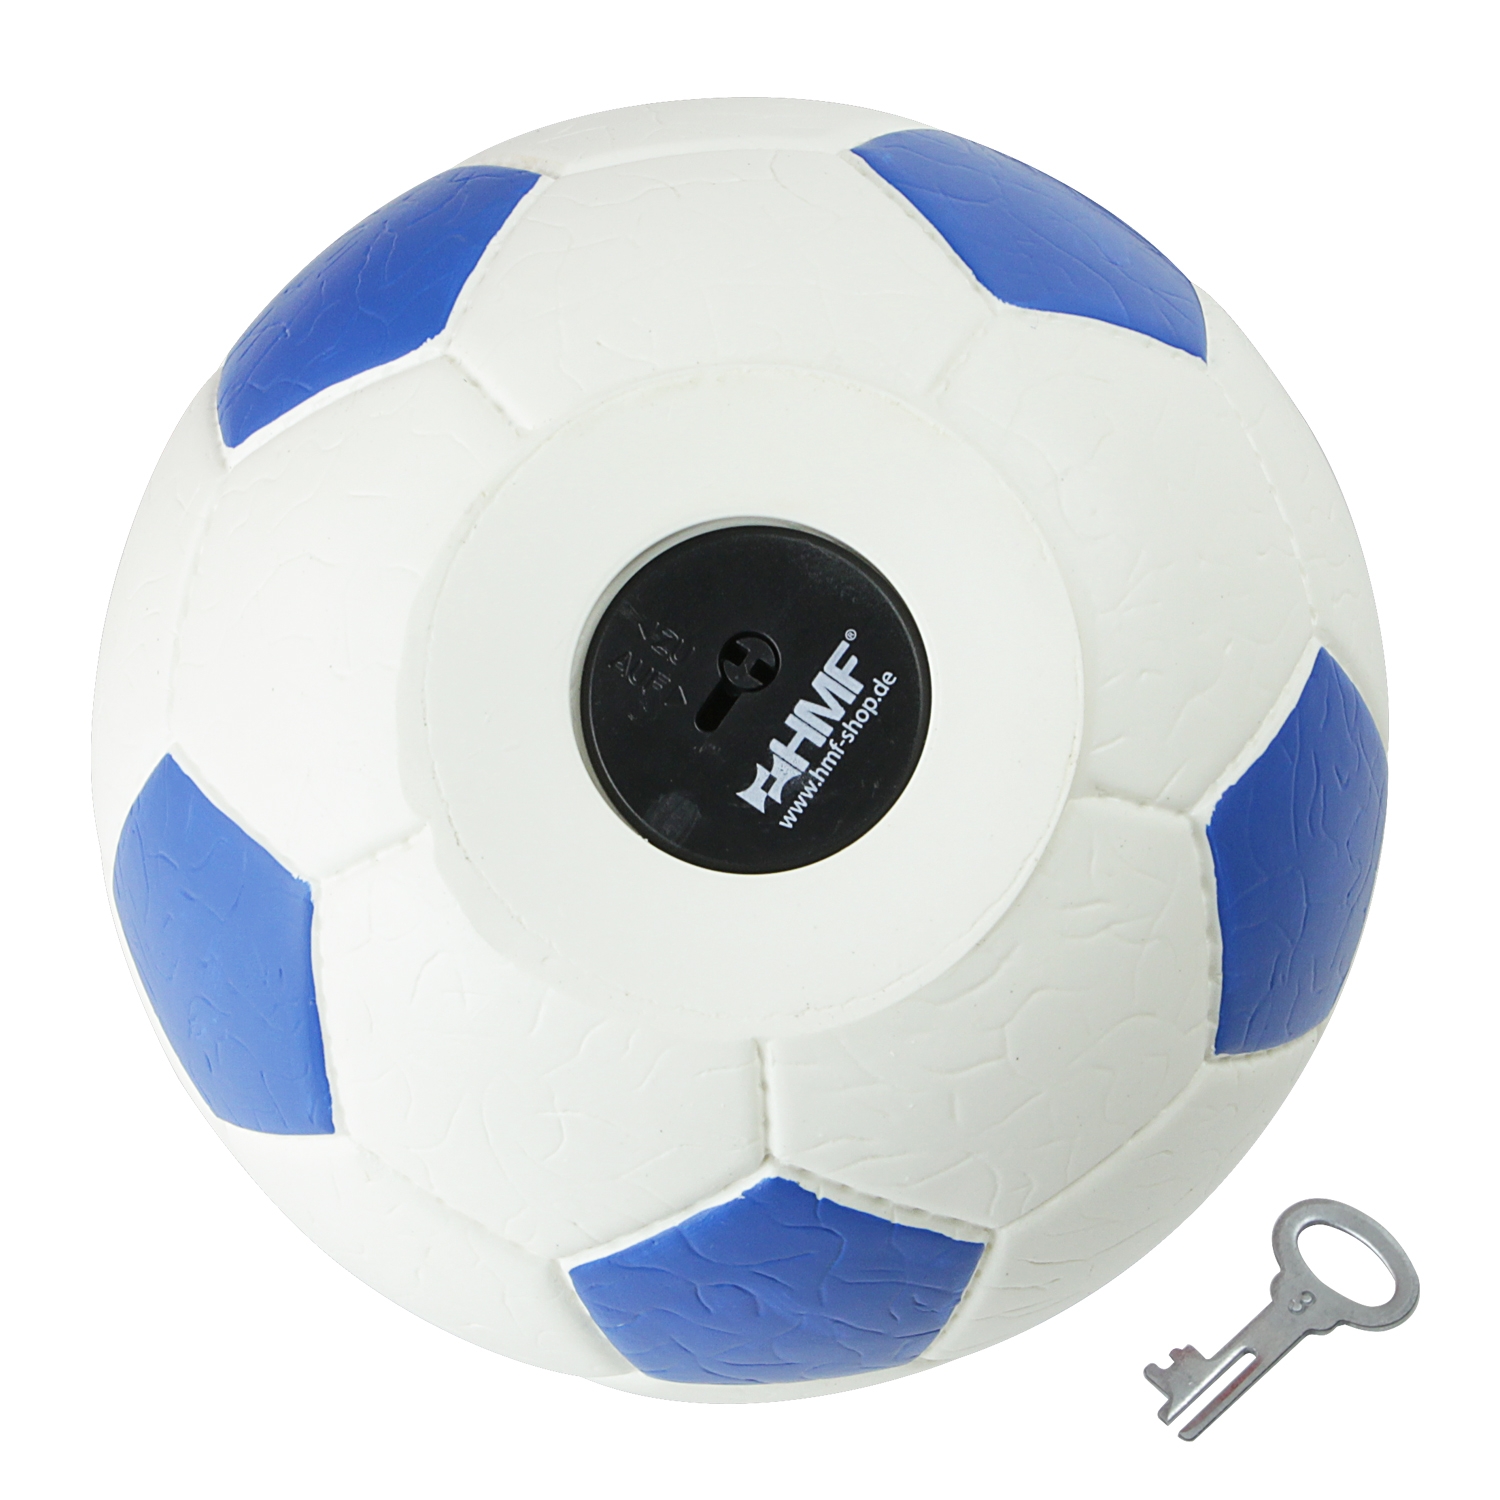 Spardose im Fußball-Look von HMF mit 15 cm Durchmesser in Blau